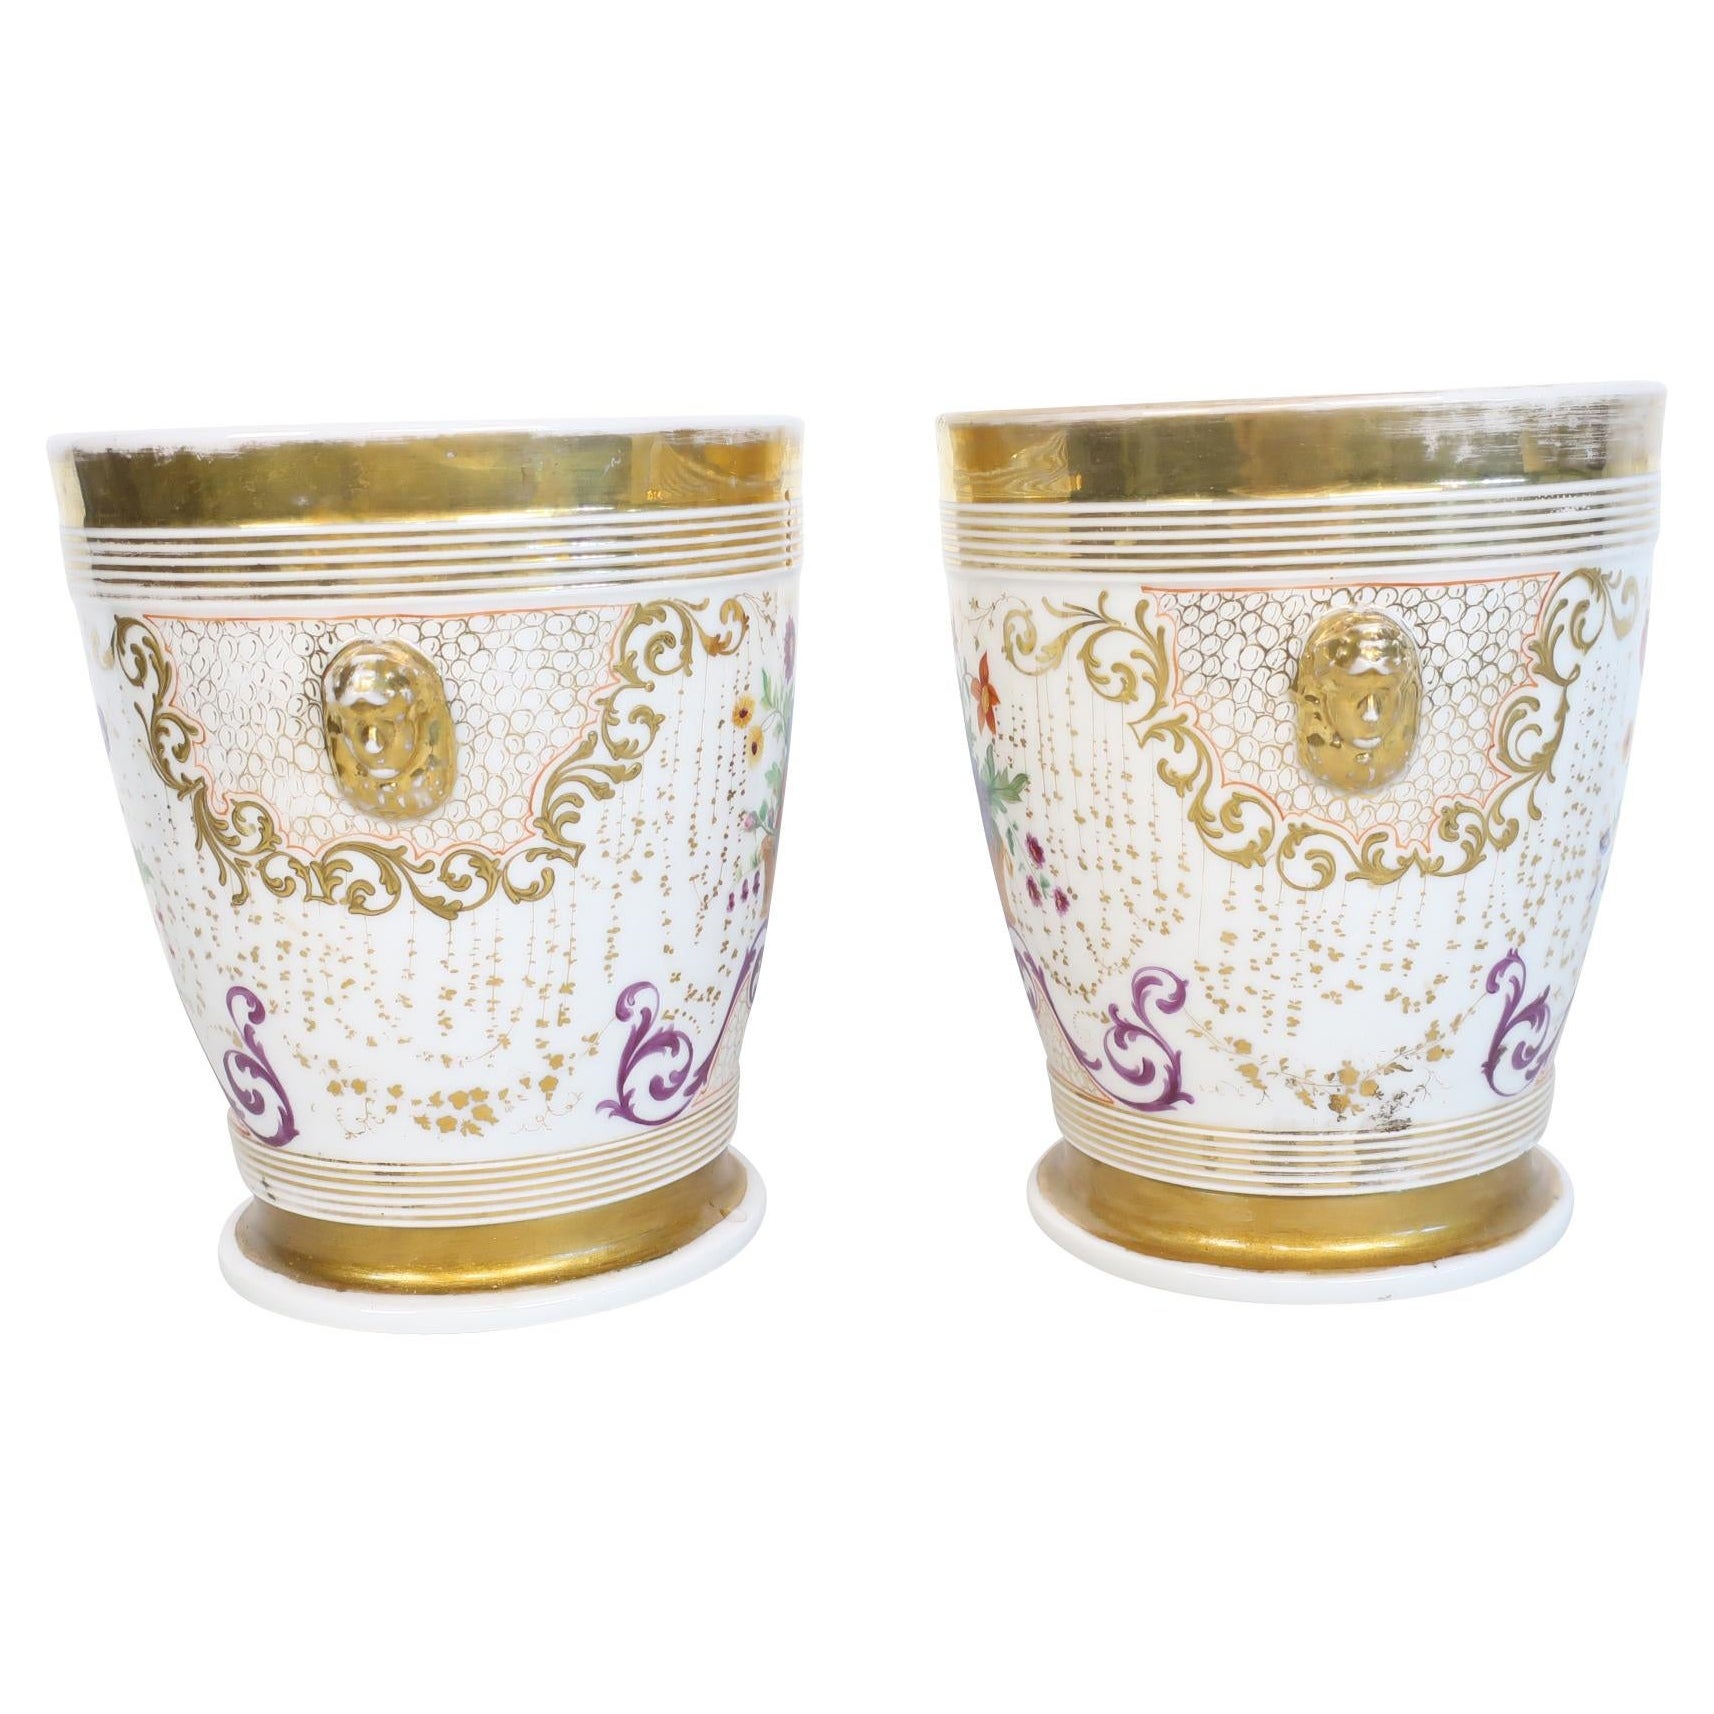 19th Century White and Floral Porcelain de Paris Jardiniere/Wine Coolers For Sale